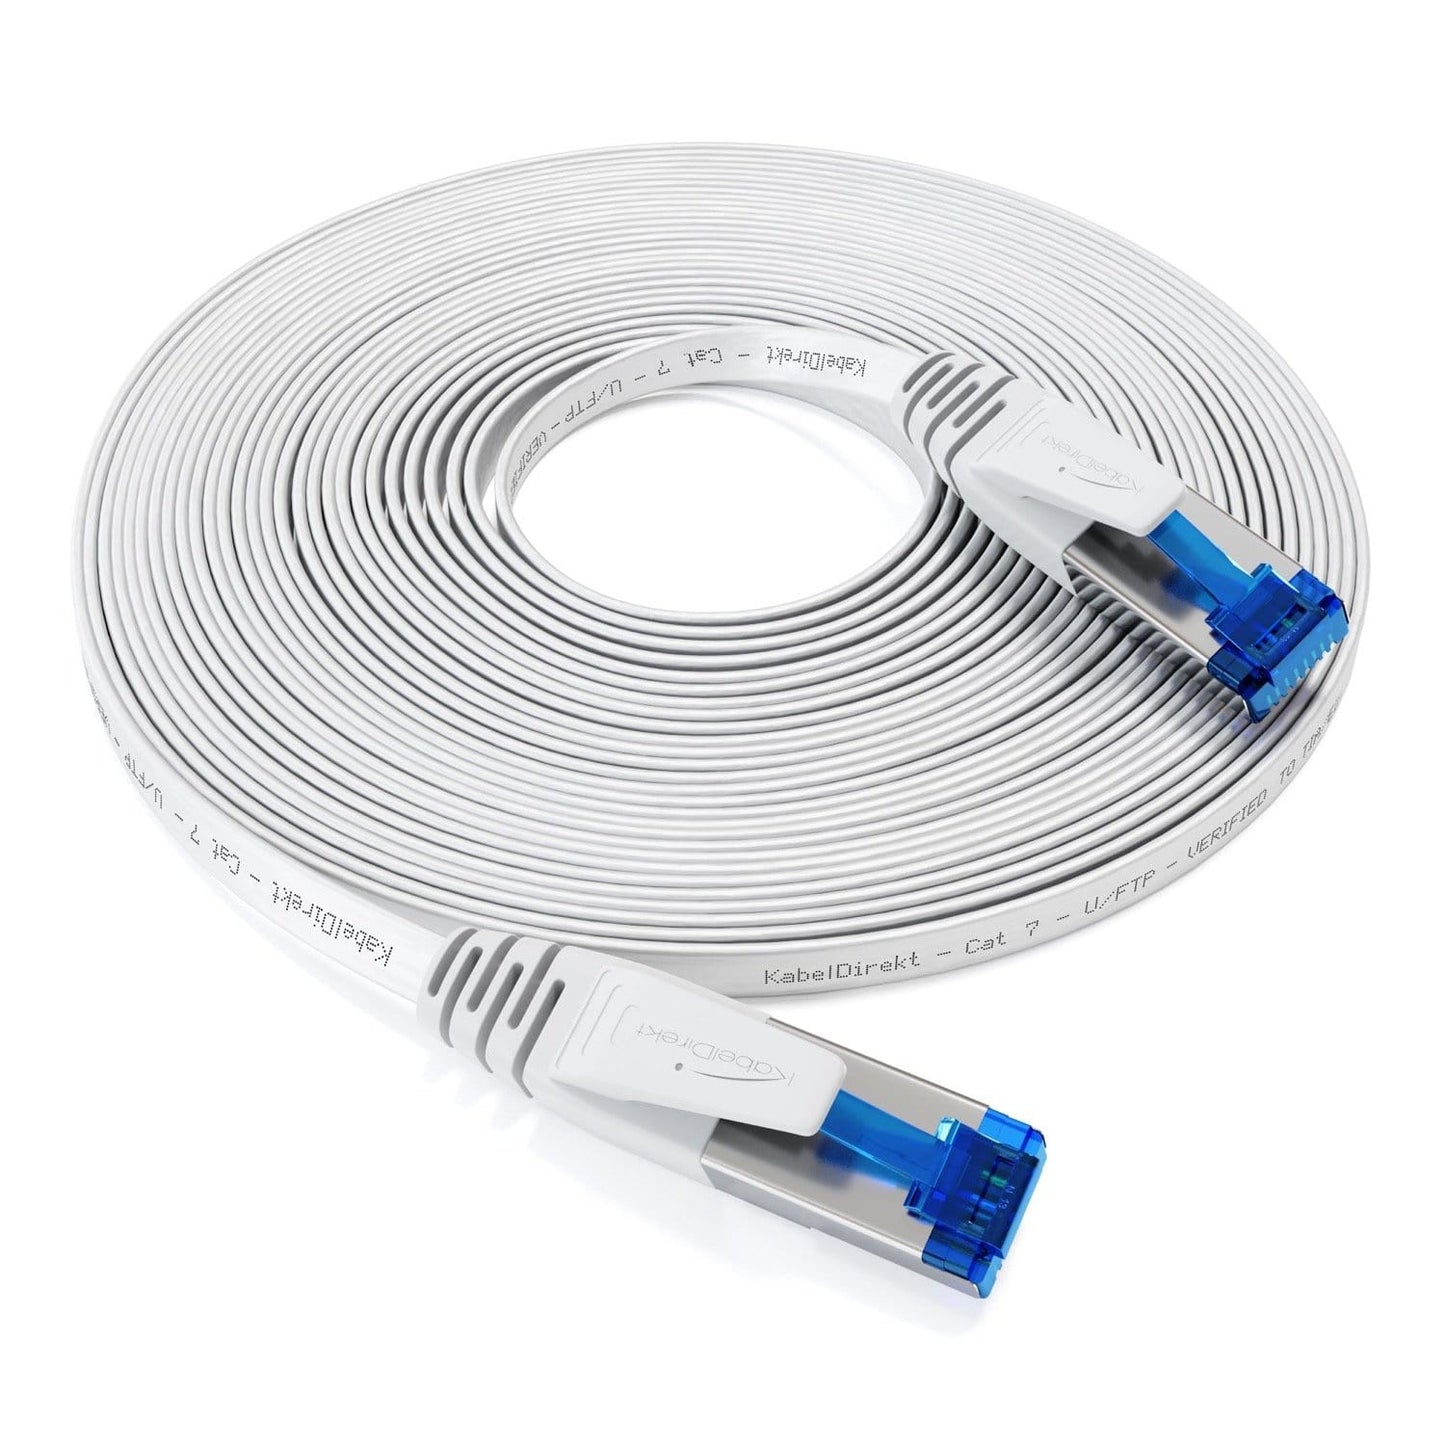 Cat 7 câble Ethernet plat – 10 Gbit/s, fiche RJ45, particulièrement flexible, blanc